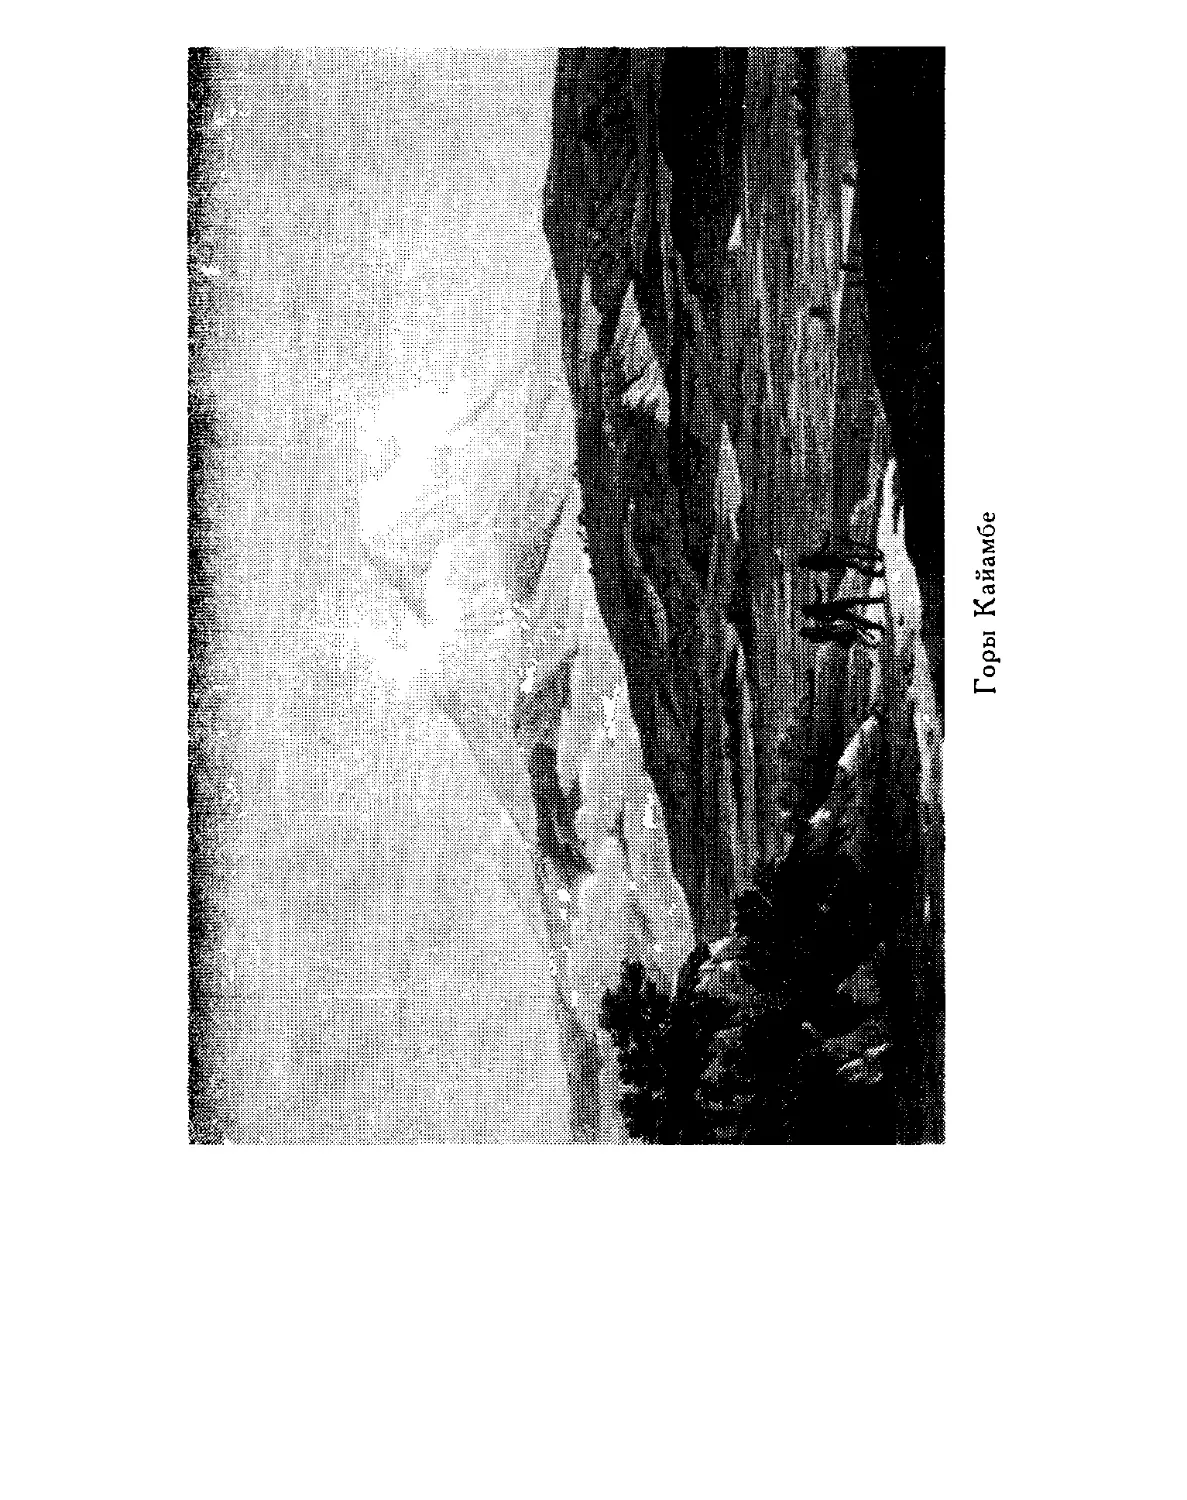 0055_Ãóìáîëüäò. Êàðòèíû Ïðèðîäû 1959_Page_028_Image_0001.tiff